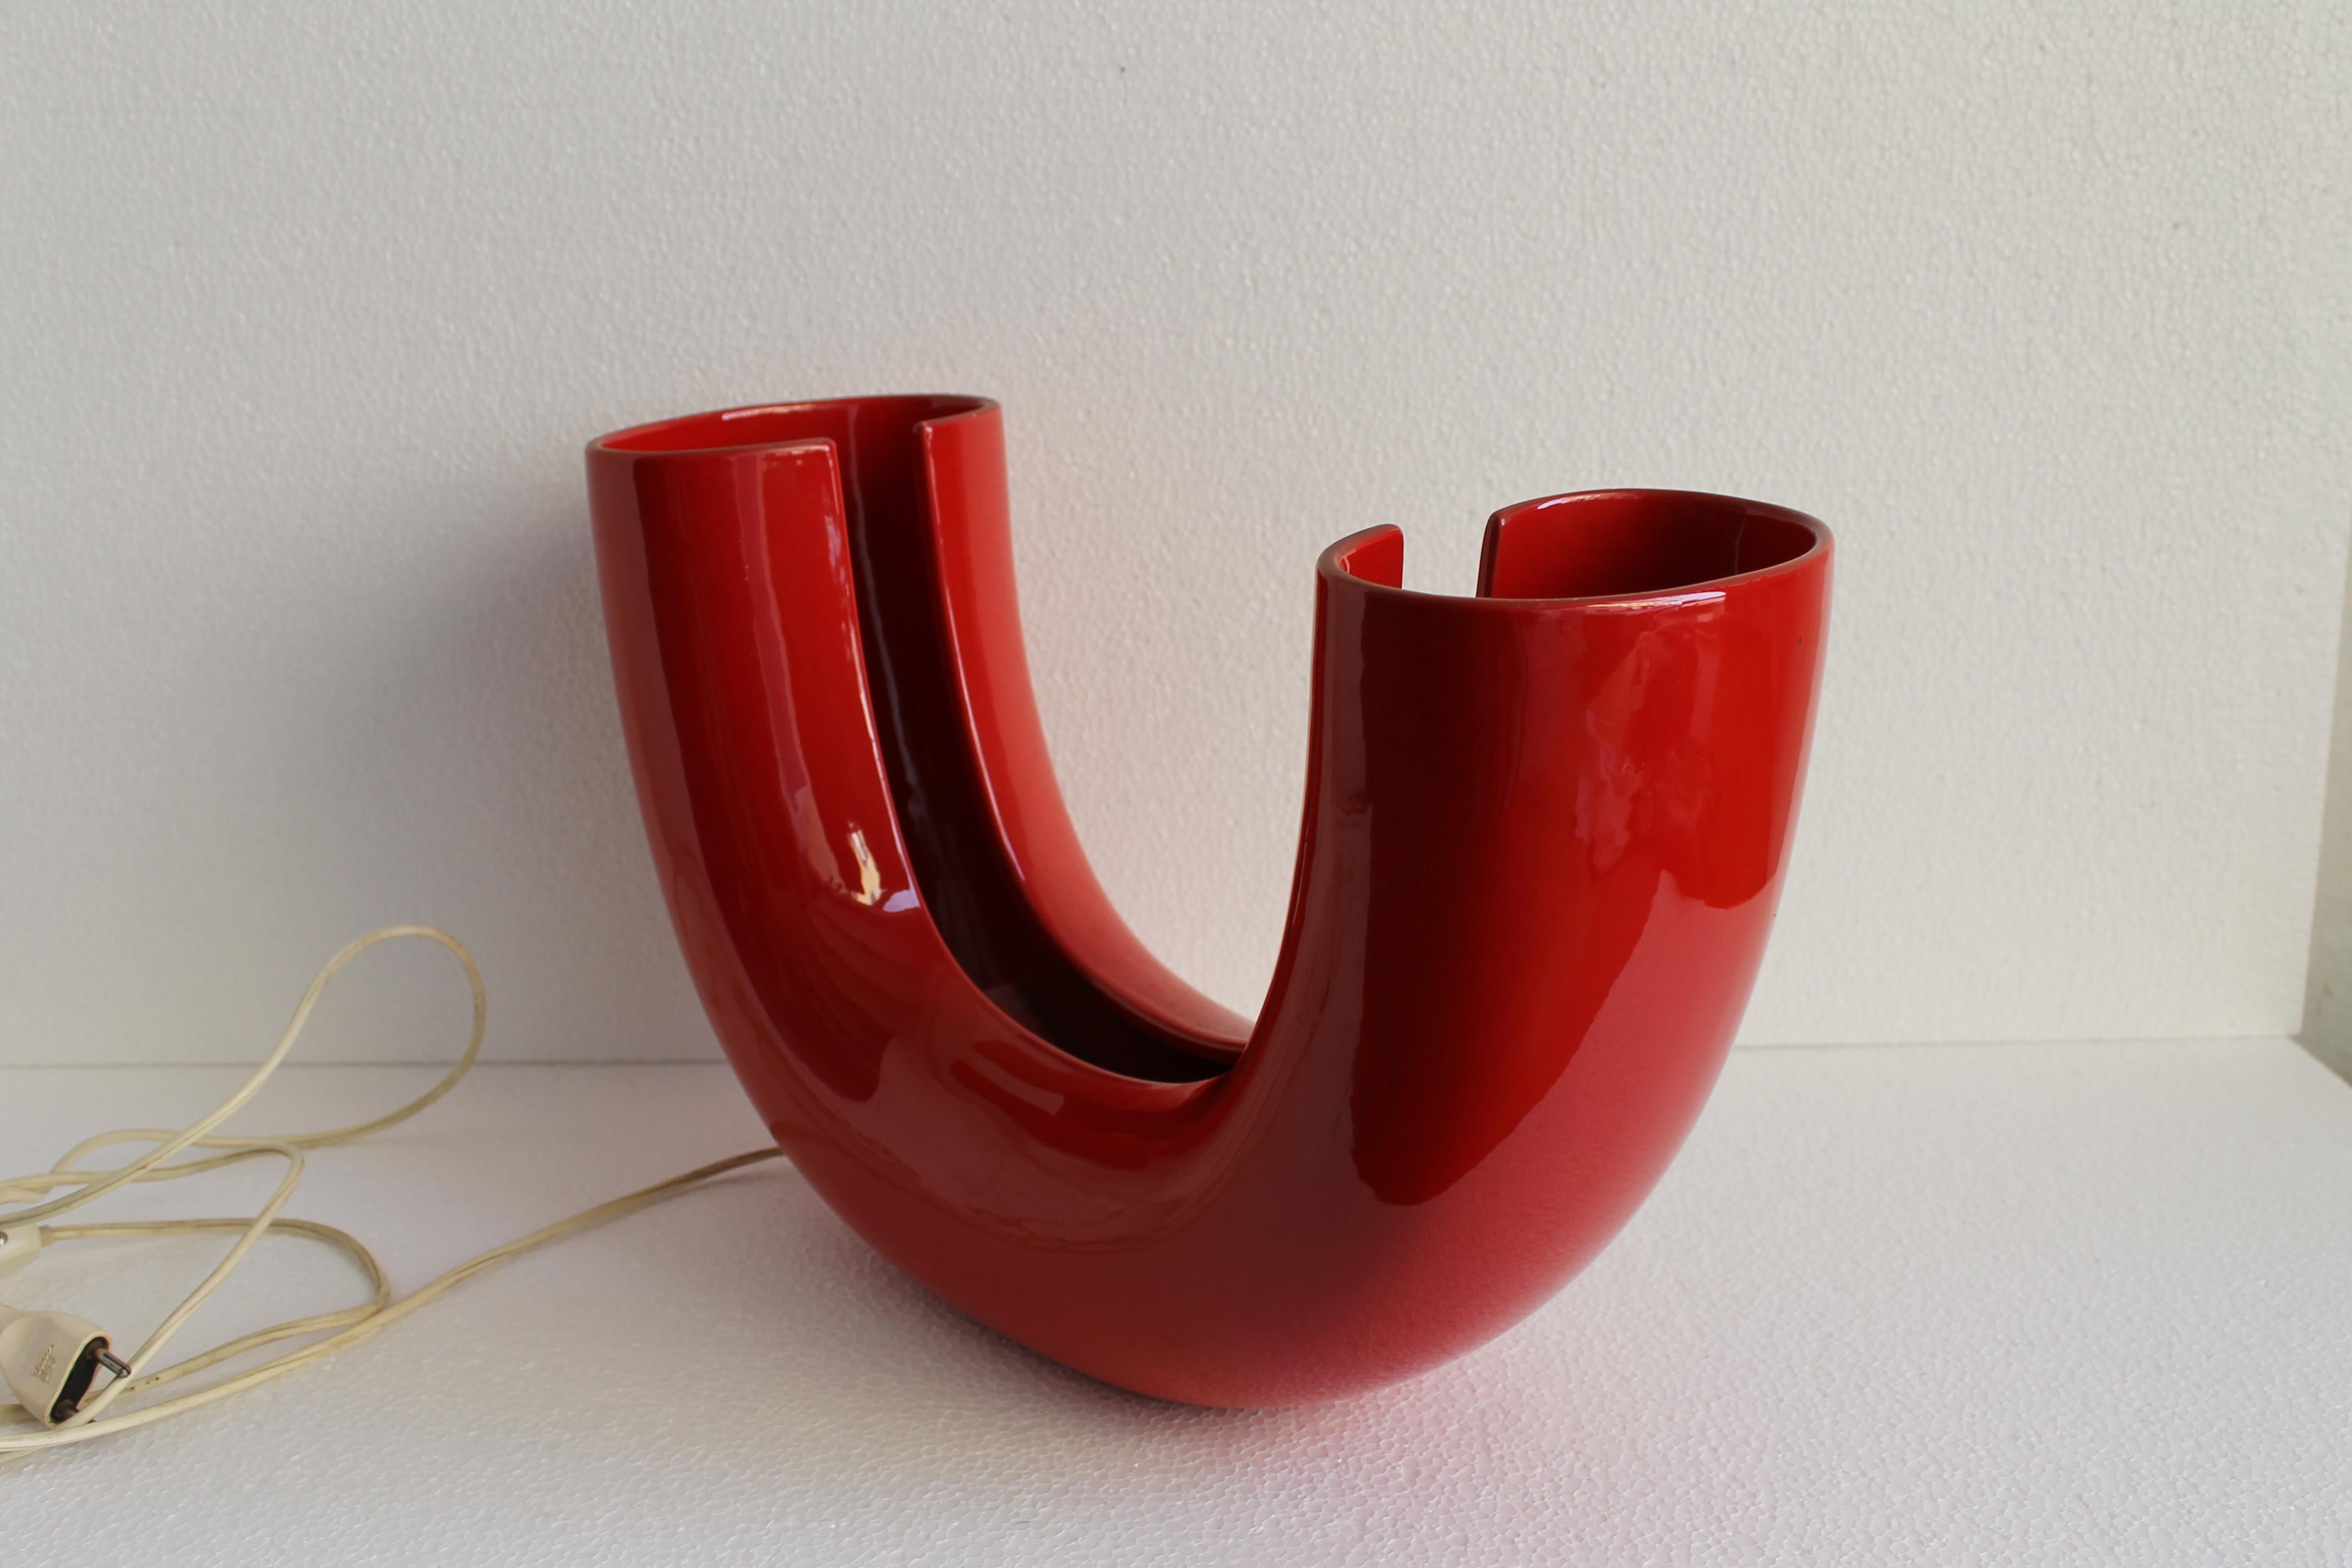 Tischleuchte Tubo, entworfen von Tomoko Tsuboi Ponzio und hergestellt von Ceramica Franco Pozzi aus Gallarate (Mailand). Rot glasierte Keramik mit zwei inneren Lampenfassungen.